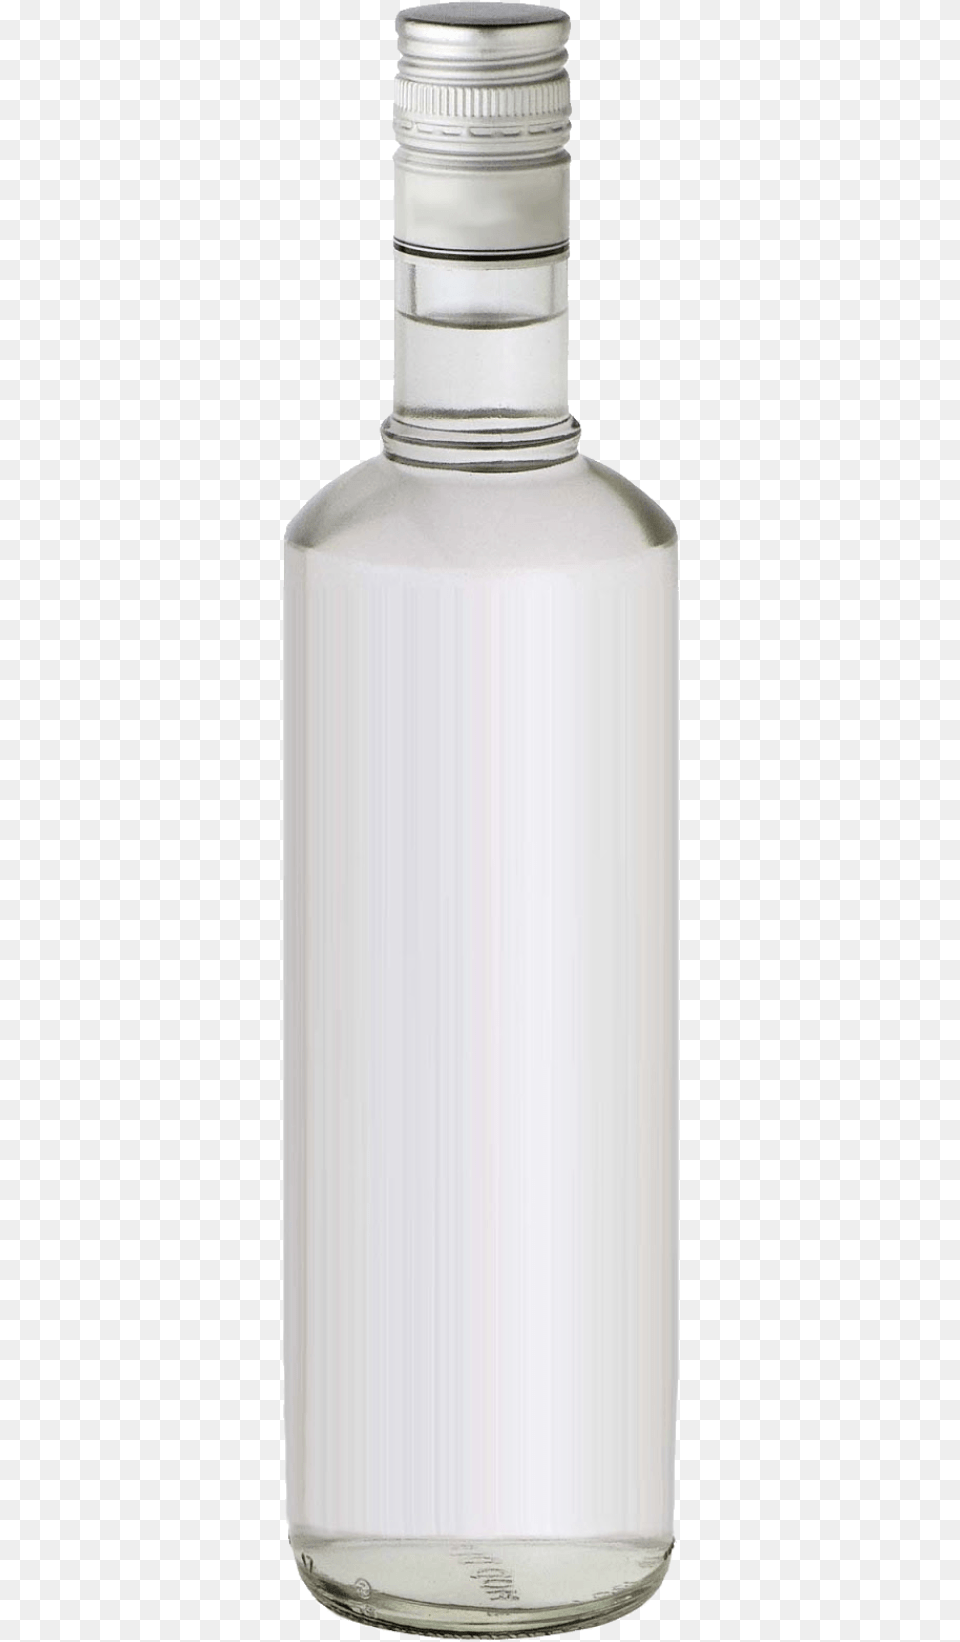 Vodka Bottle Jar, Glass, Shaker Png Image